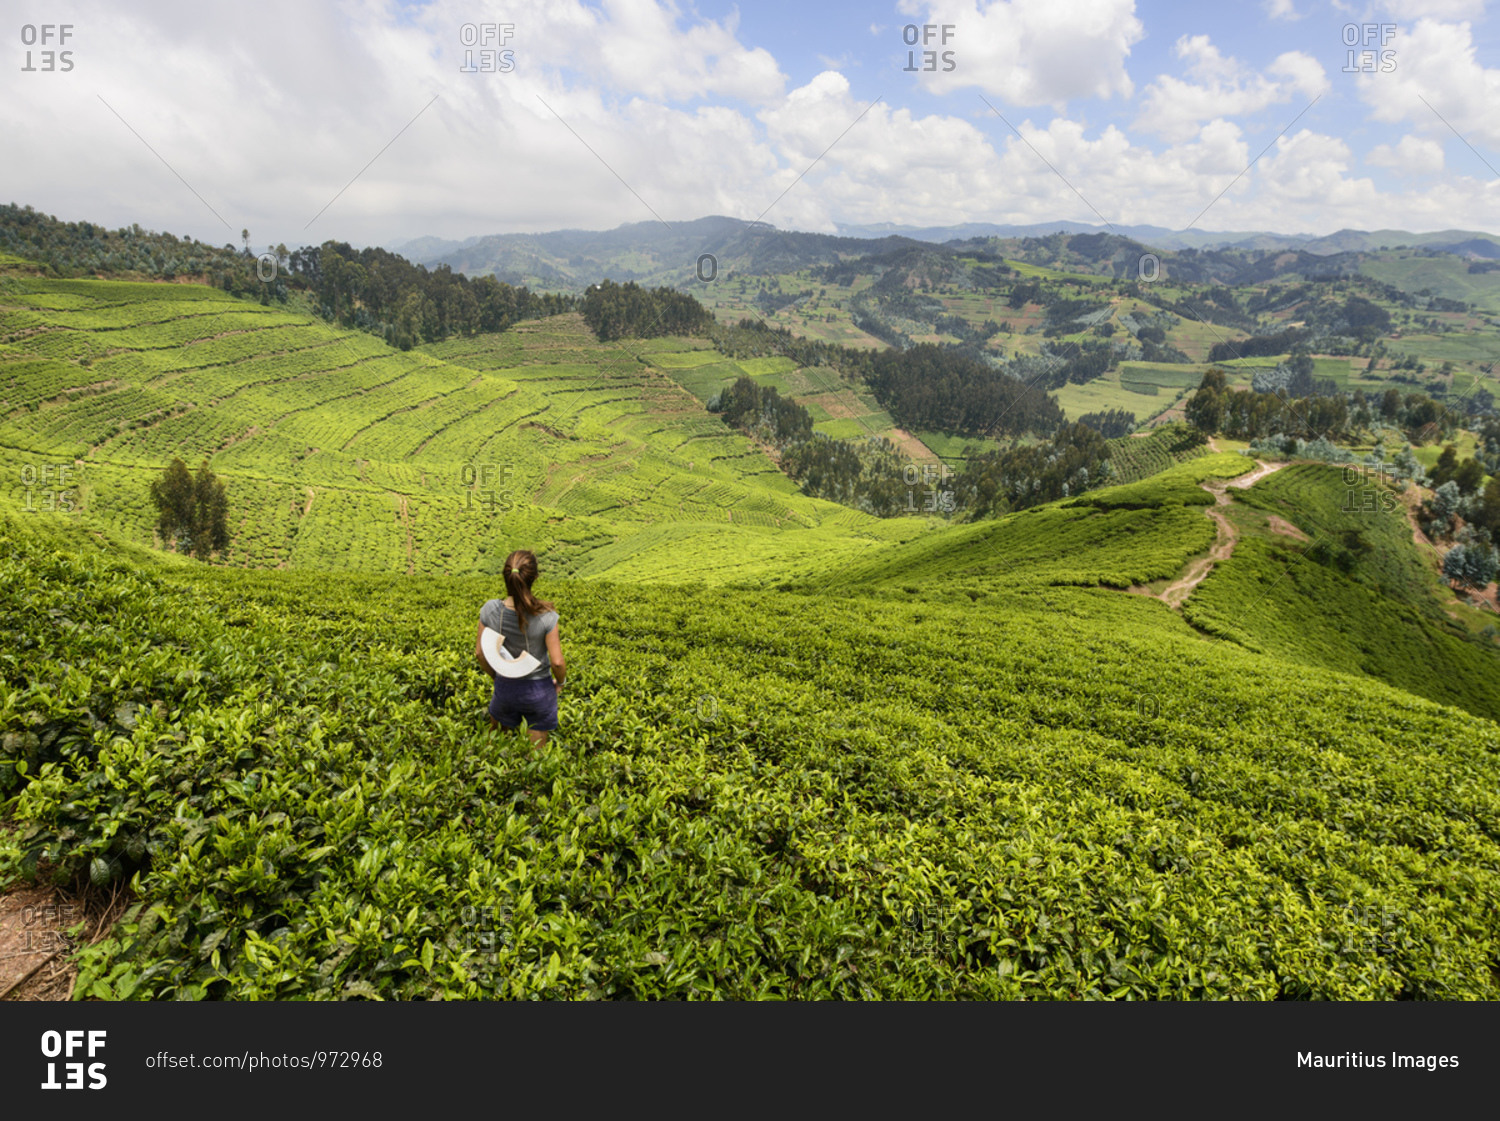 Tea plantations in western Rwanda, Africa